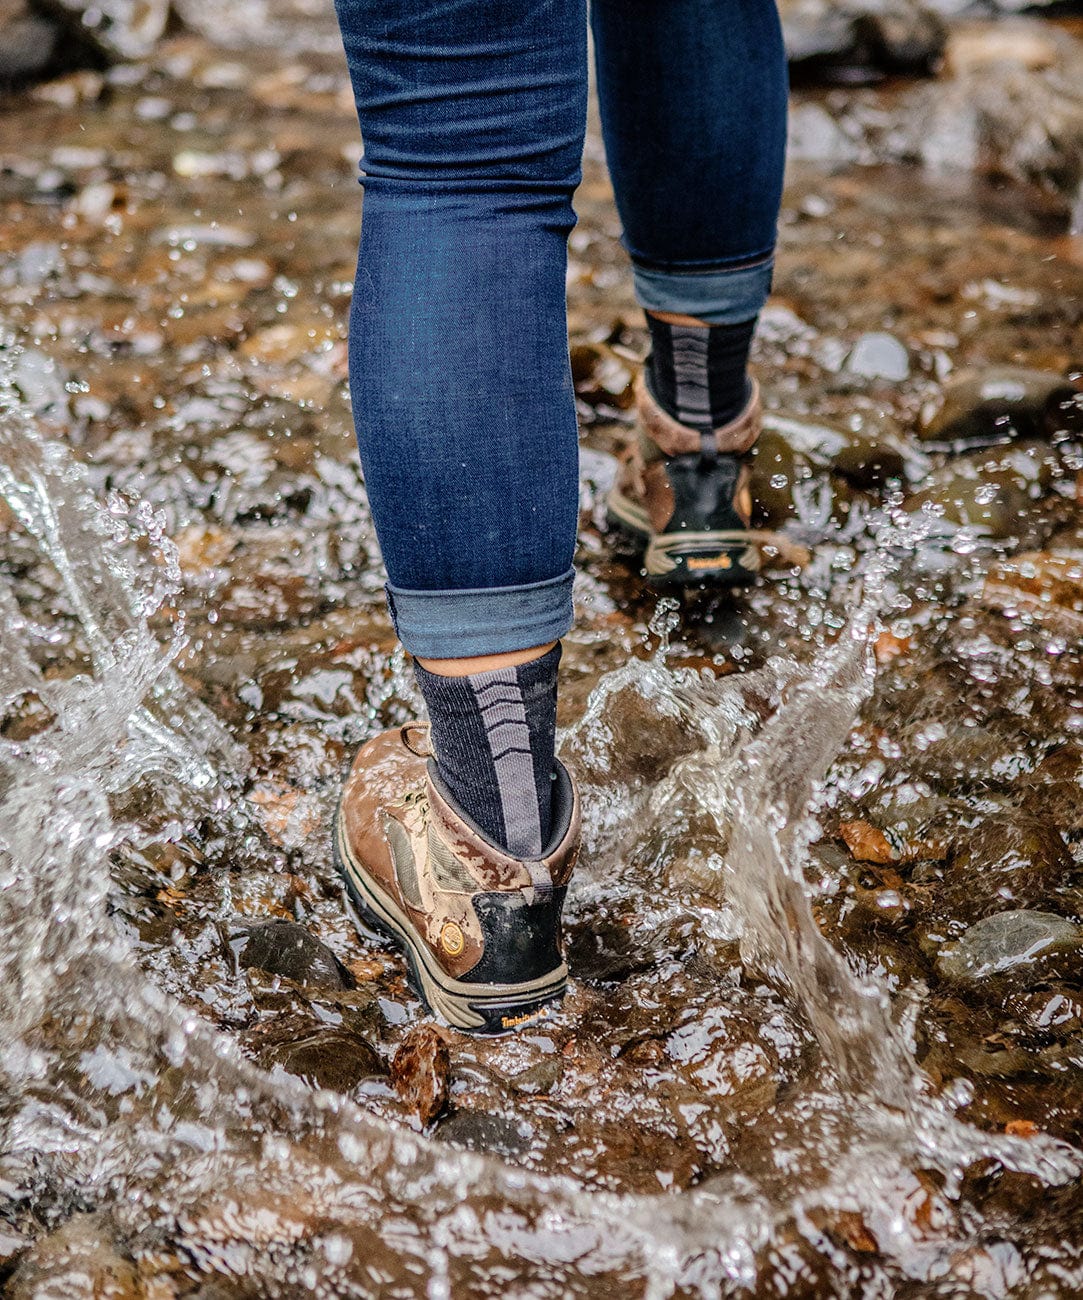 Crosspoint Essentials Waterproof Socks: Victory